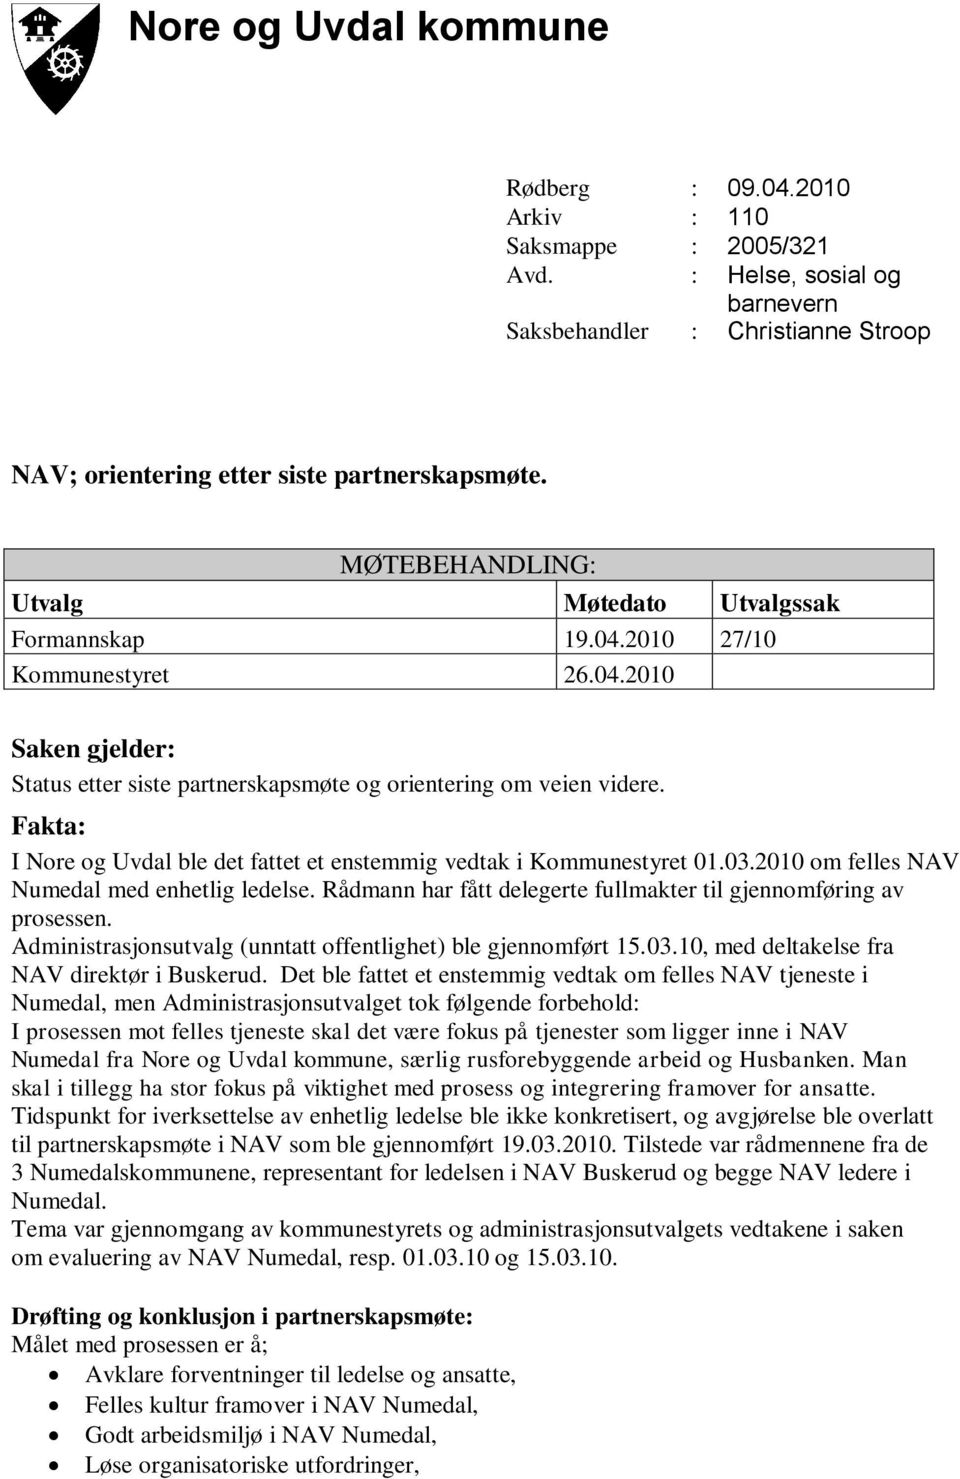 Fakta: I Nore og Uvdal ble det fattet et enstemmig vedtak i Kommunestyret 01.03.2010 om felles NAV Numedal med enhetlig ledelse. Rådmann har fått delegerte fullmakter til gjennomføring av prosessen.